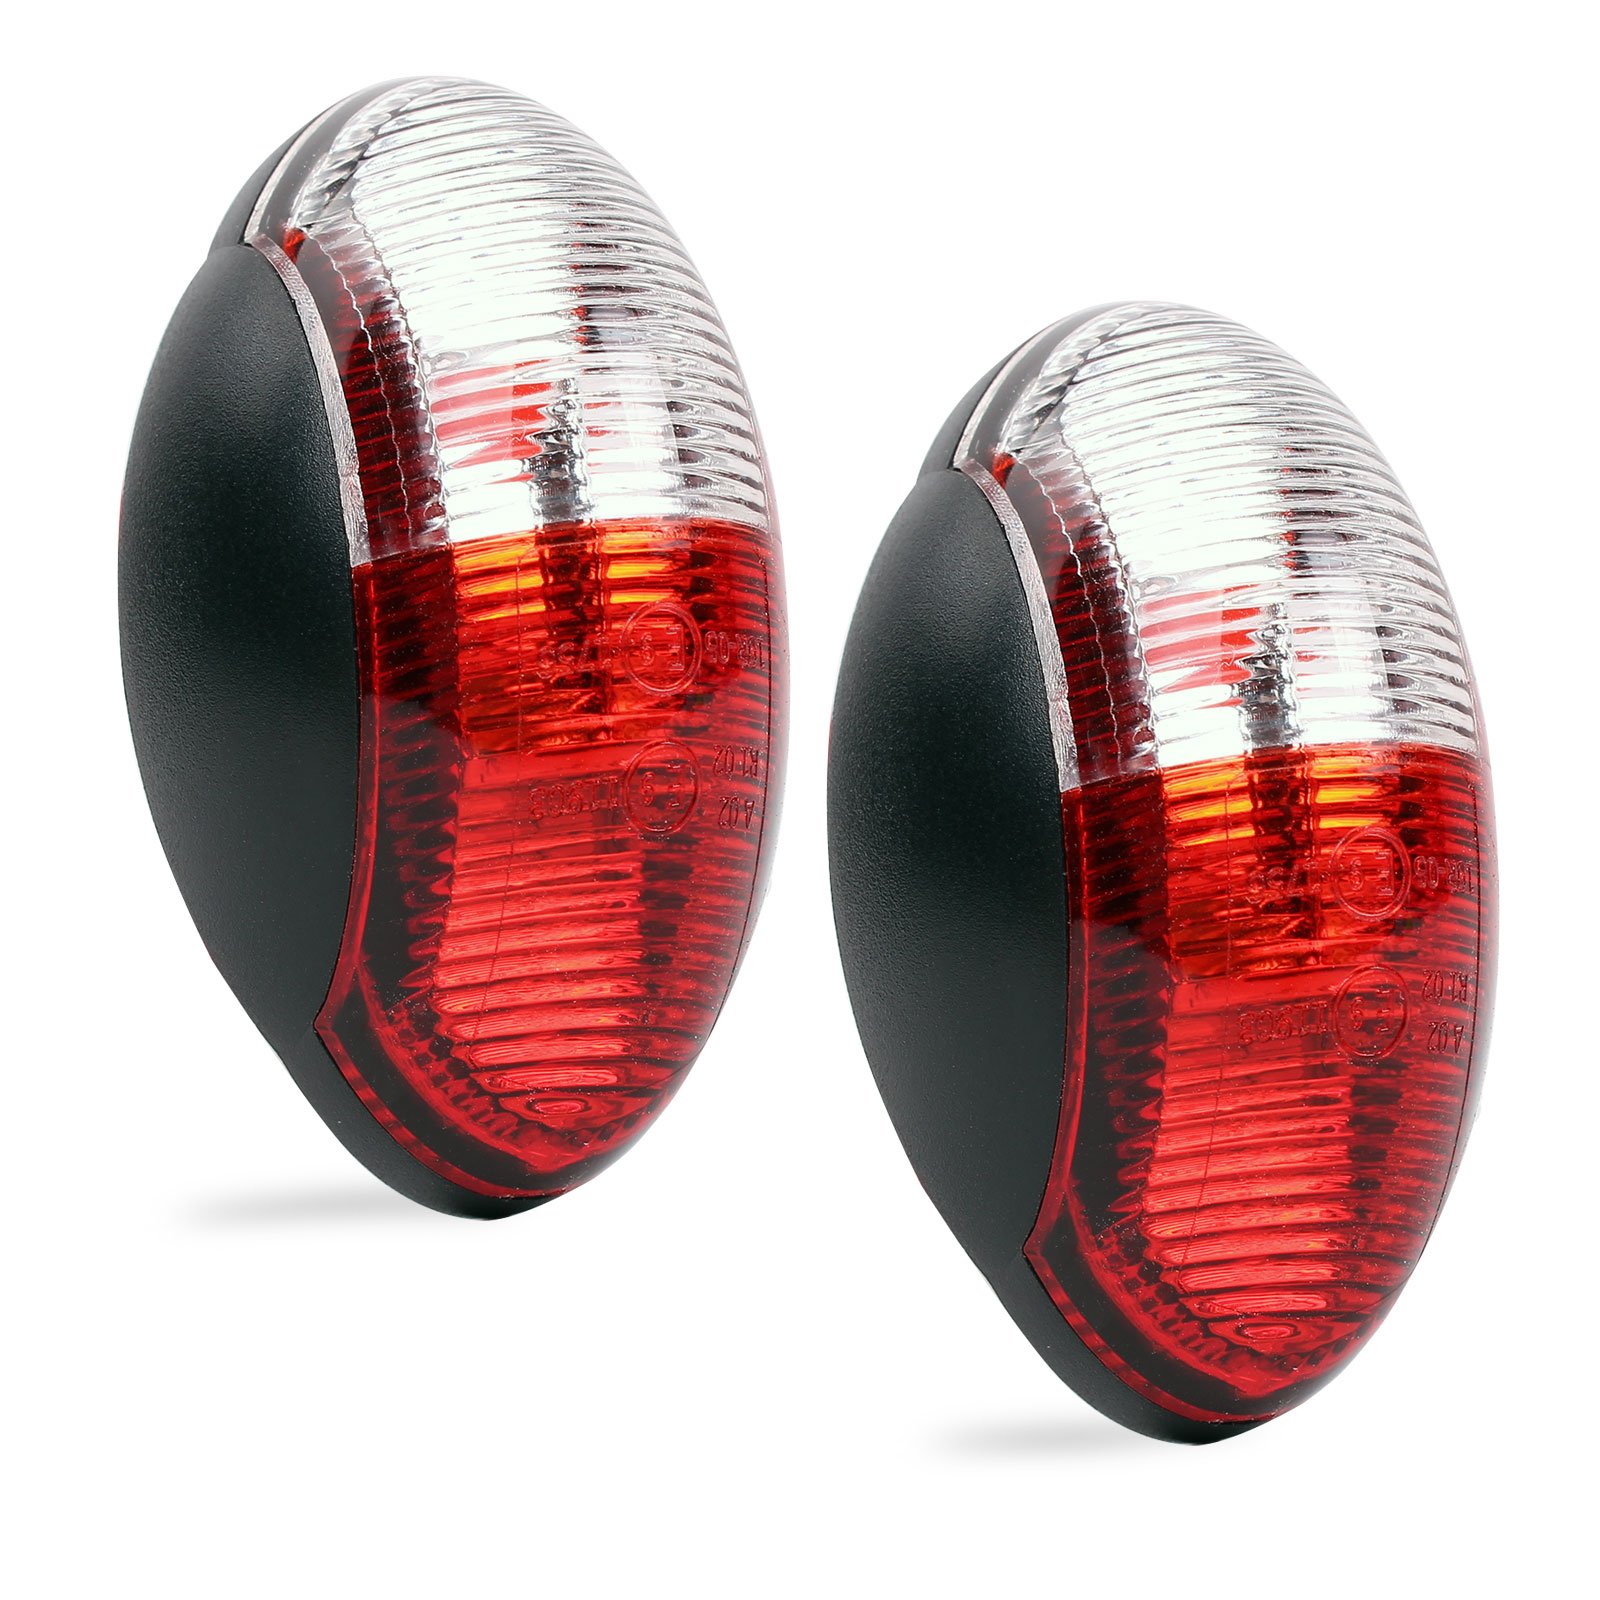 Umrissleuchte LED 12v Begrenzungsleuchte 2er Set rot/weiß 60x34 mm, 12-30 Volt für Wohnmobil, Wohnwagen und Anhänge